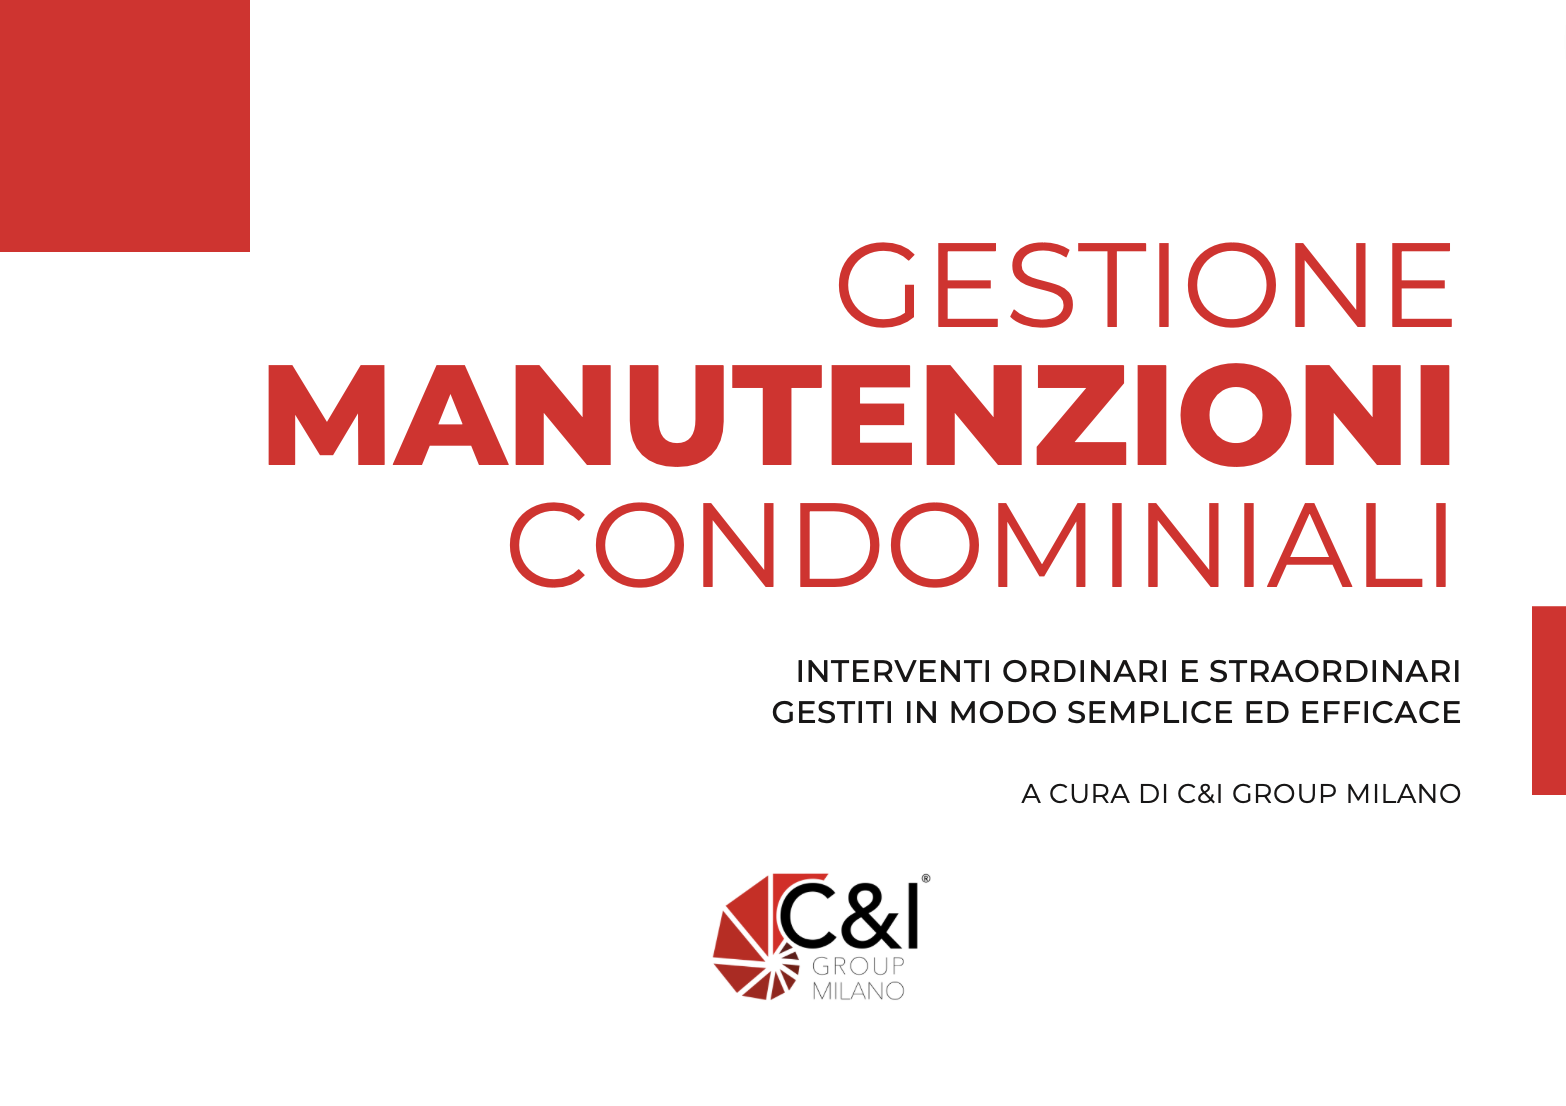 https://www.costruzionieimmobiliare.it/wp-content/uploads/2022/11/gestione-manutenzione-condominiali-ci-group-milano.png